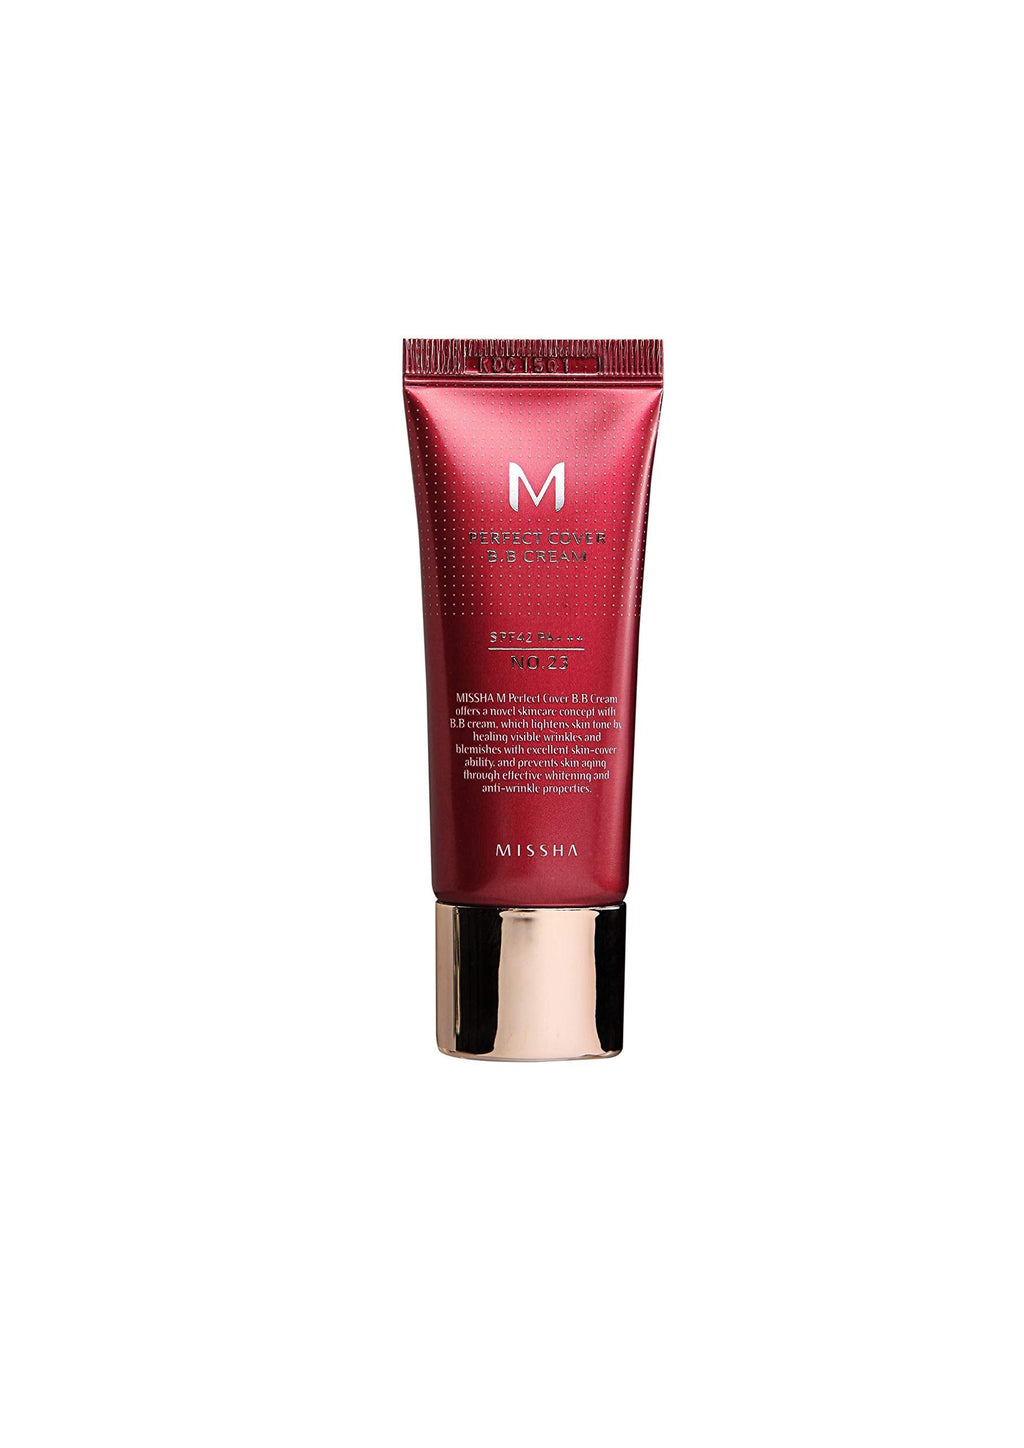 [Australia] - Missha M Perfect Cover Bb Cream, SPF42, No. 23 / Natural Beige, 20 ml, 8809581487963 